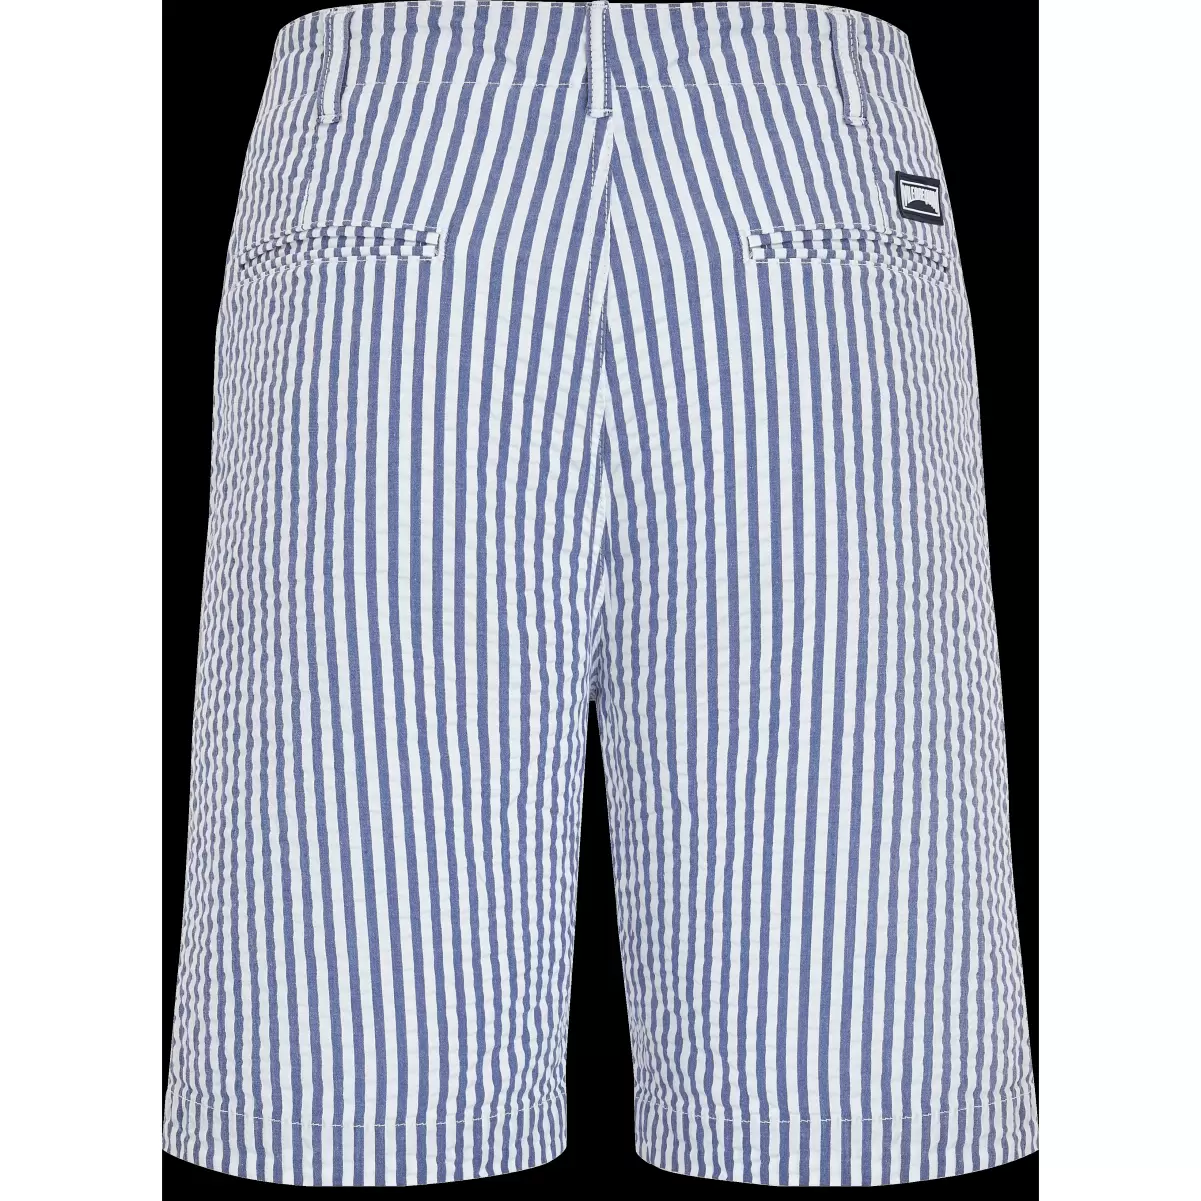 Jeans Blue / Blau Shorts Ultraleichte Seersucker Chino-Bermudashorts Für Herren Vilebrequin Rabattberechtigung Herren - 4